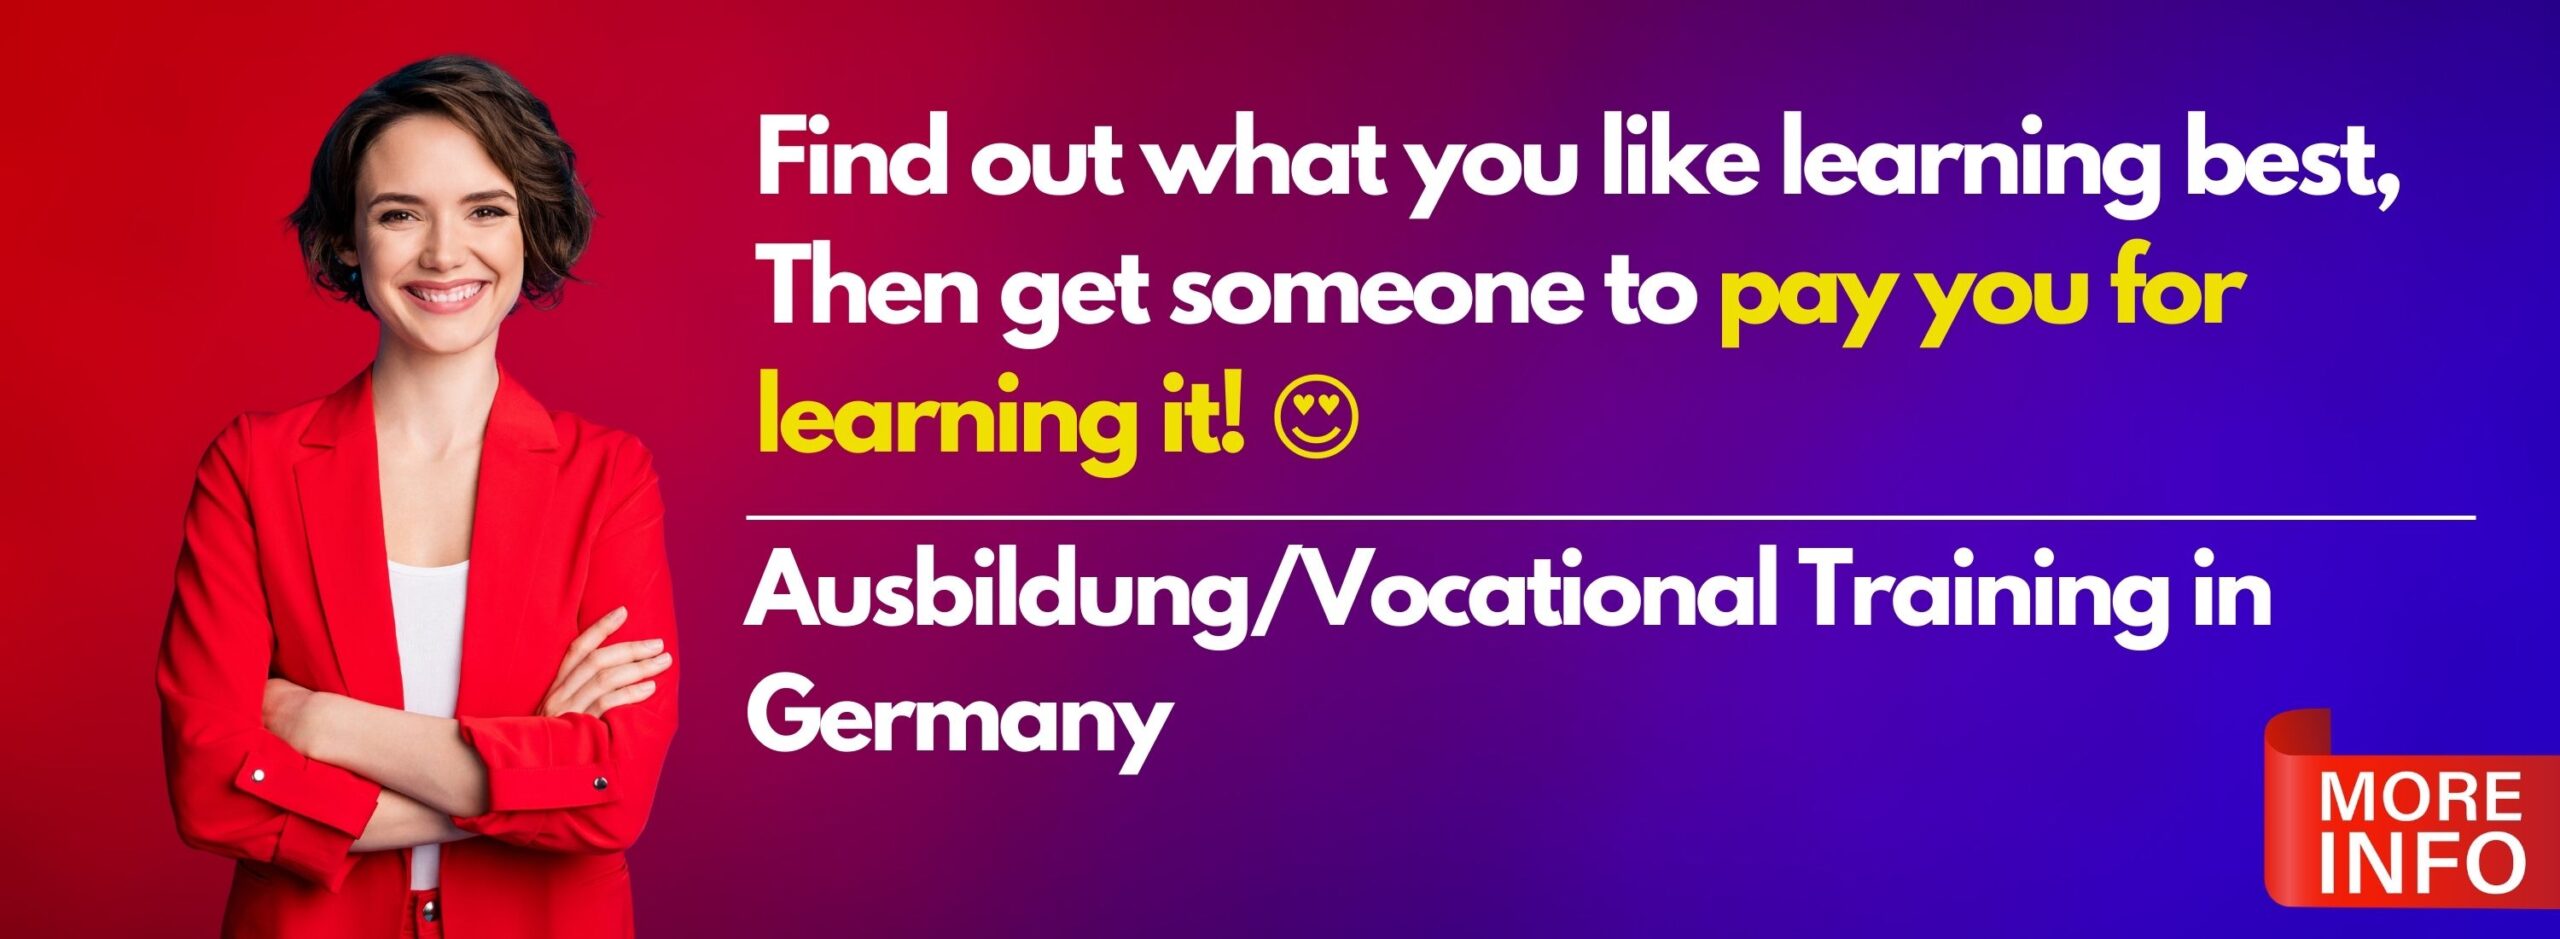 Ausbildung in Germany